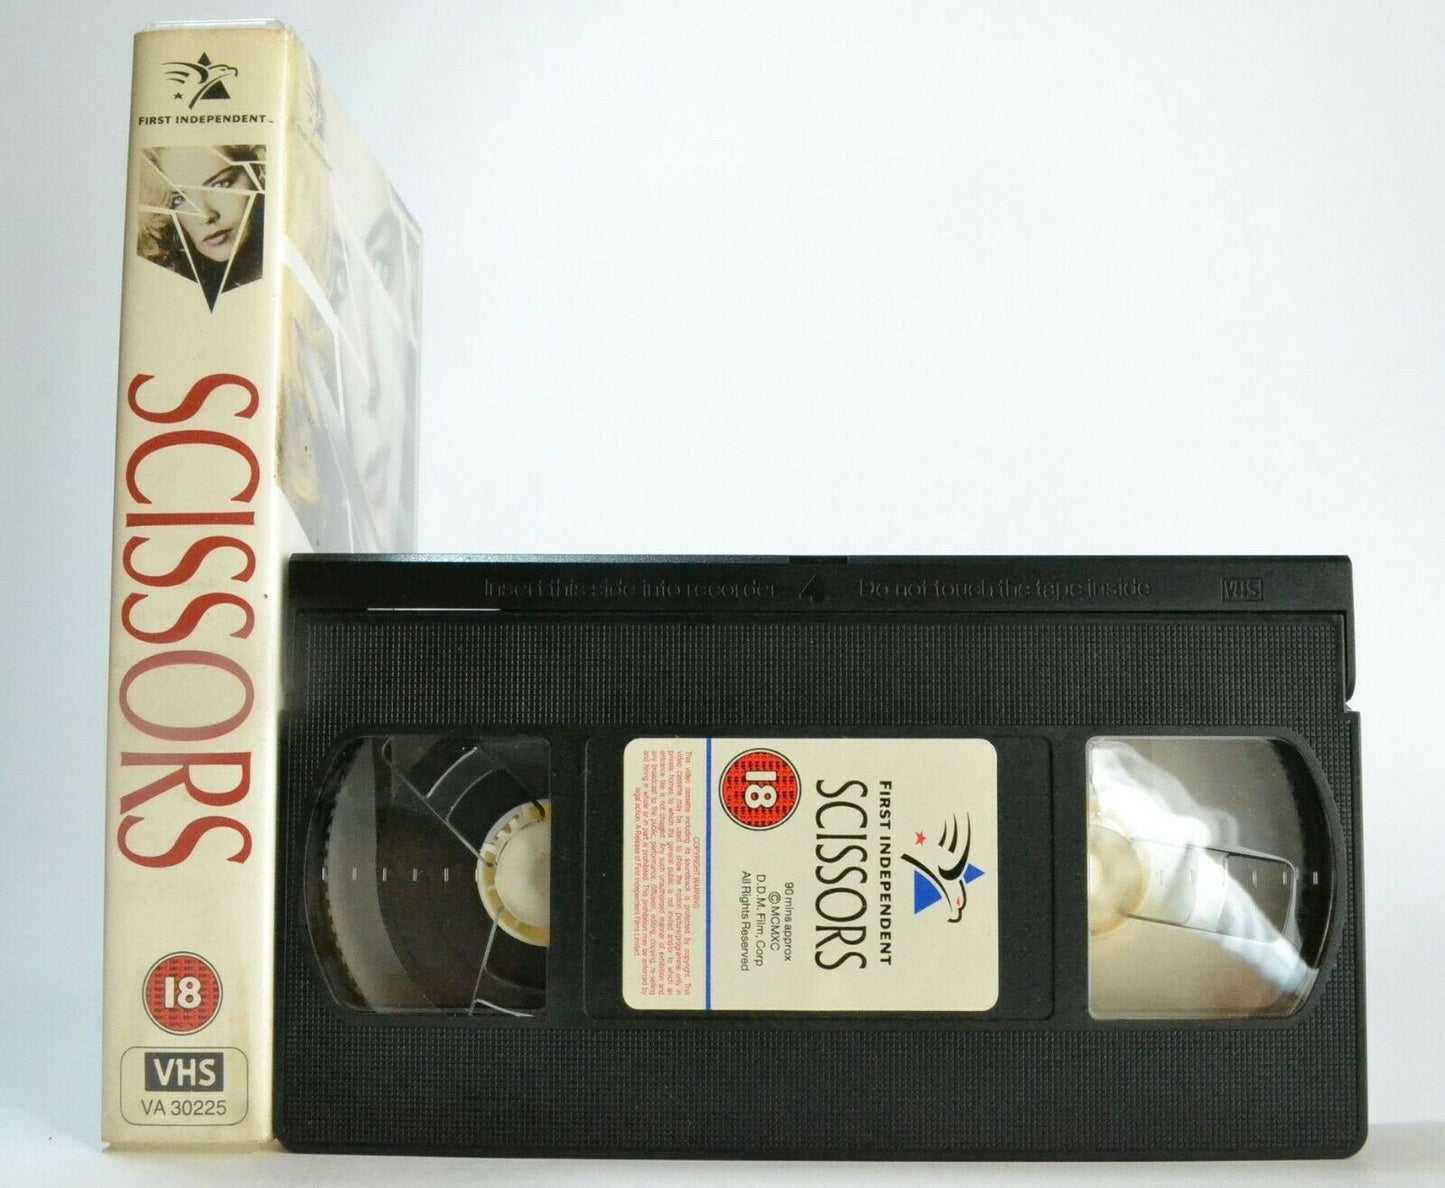 Scissors - [Frank De Felitta] - Psychological Thriller - Sharon Stone - Pal VHS-